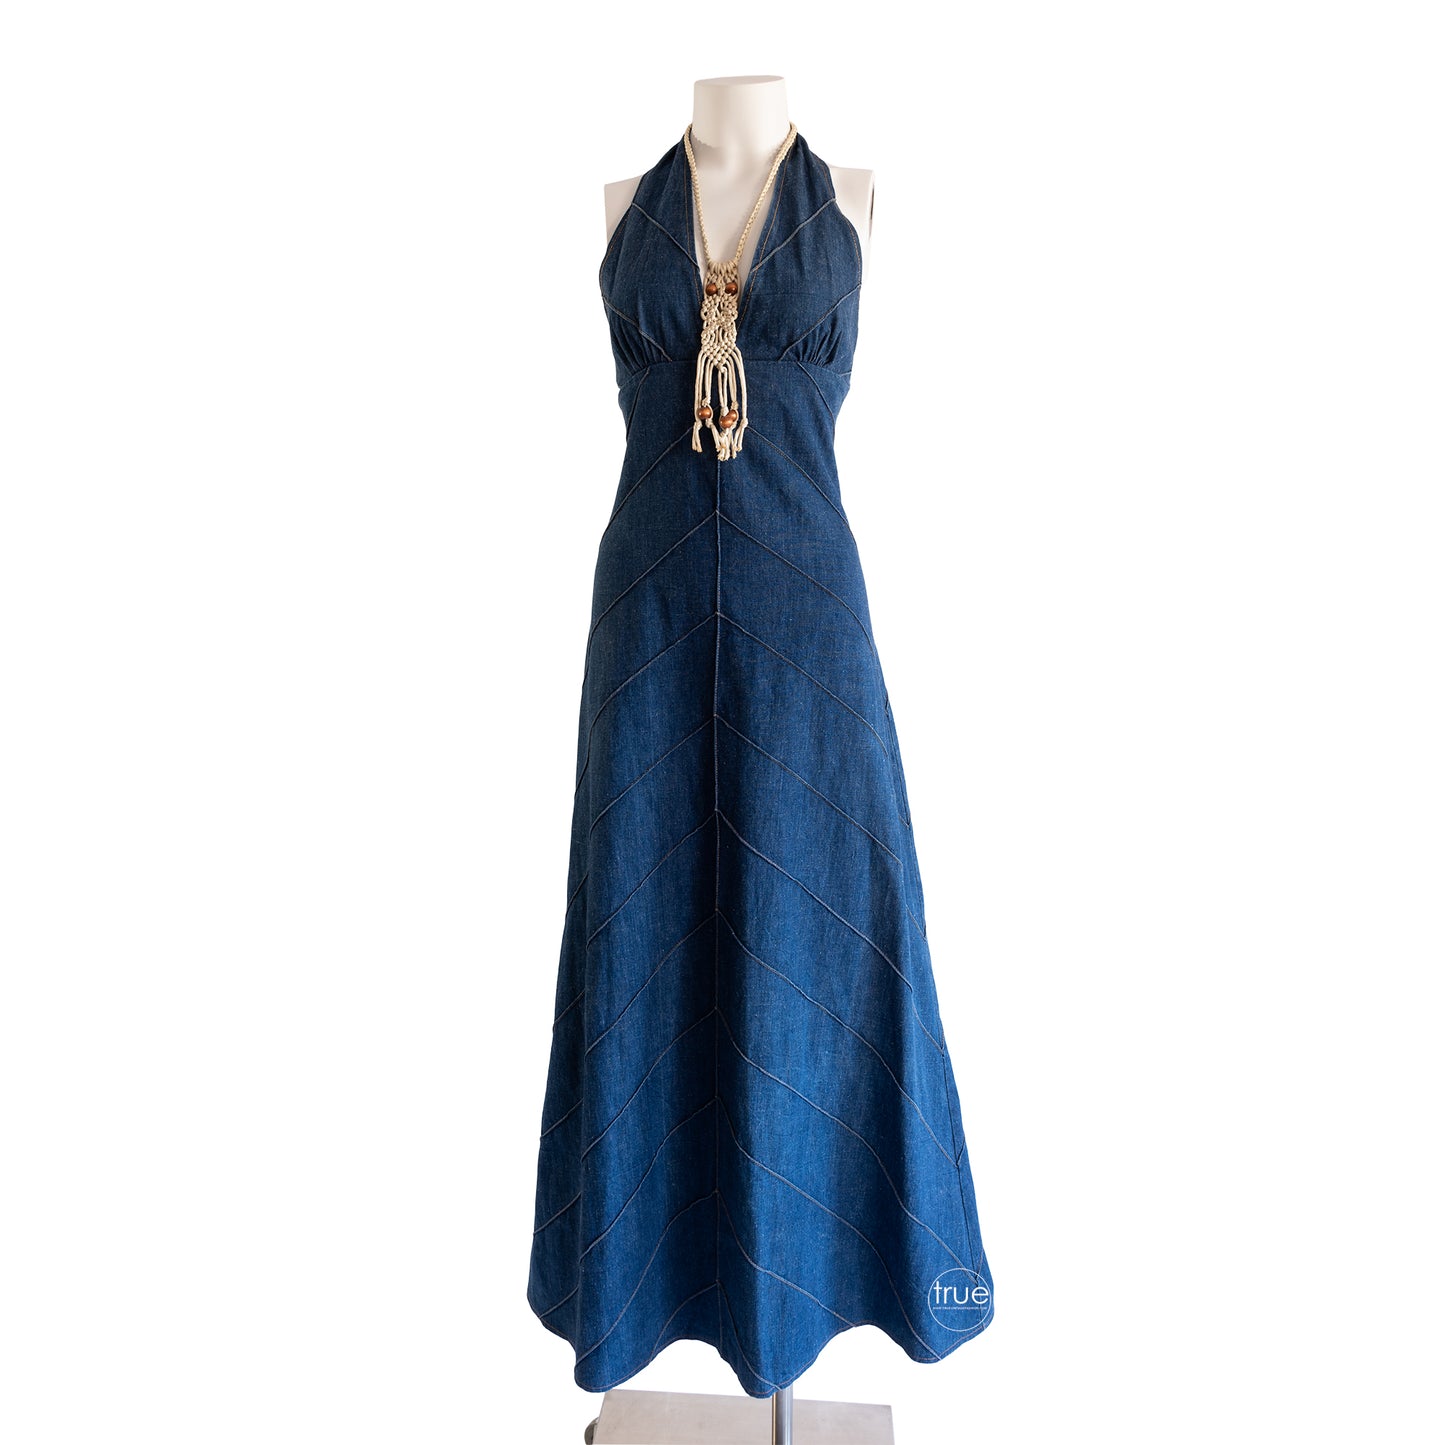 vintage 1970's dress ...2DIE4 denim halter maxi dress with chevron pintucking